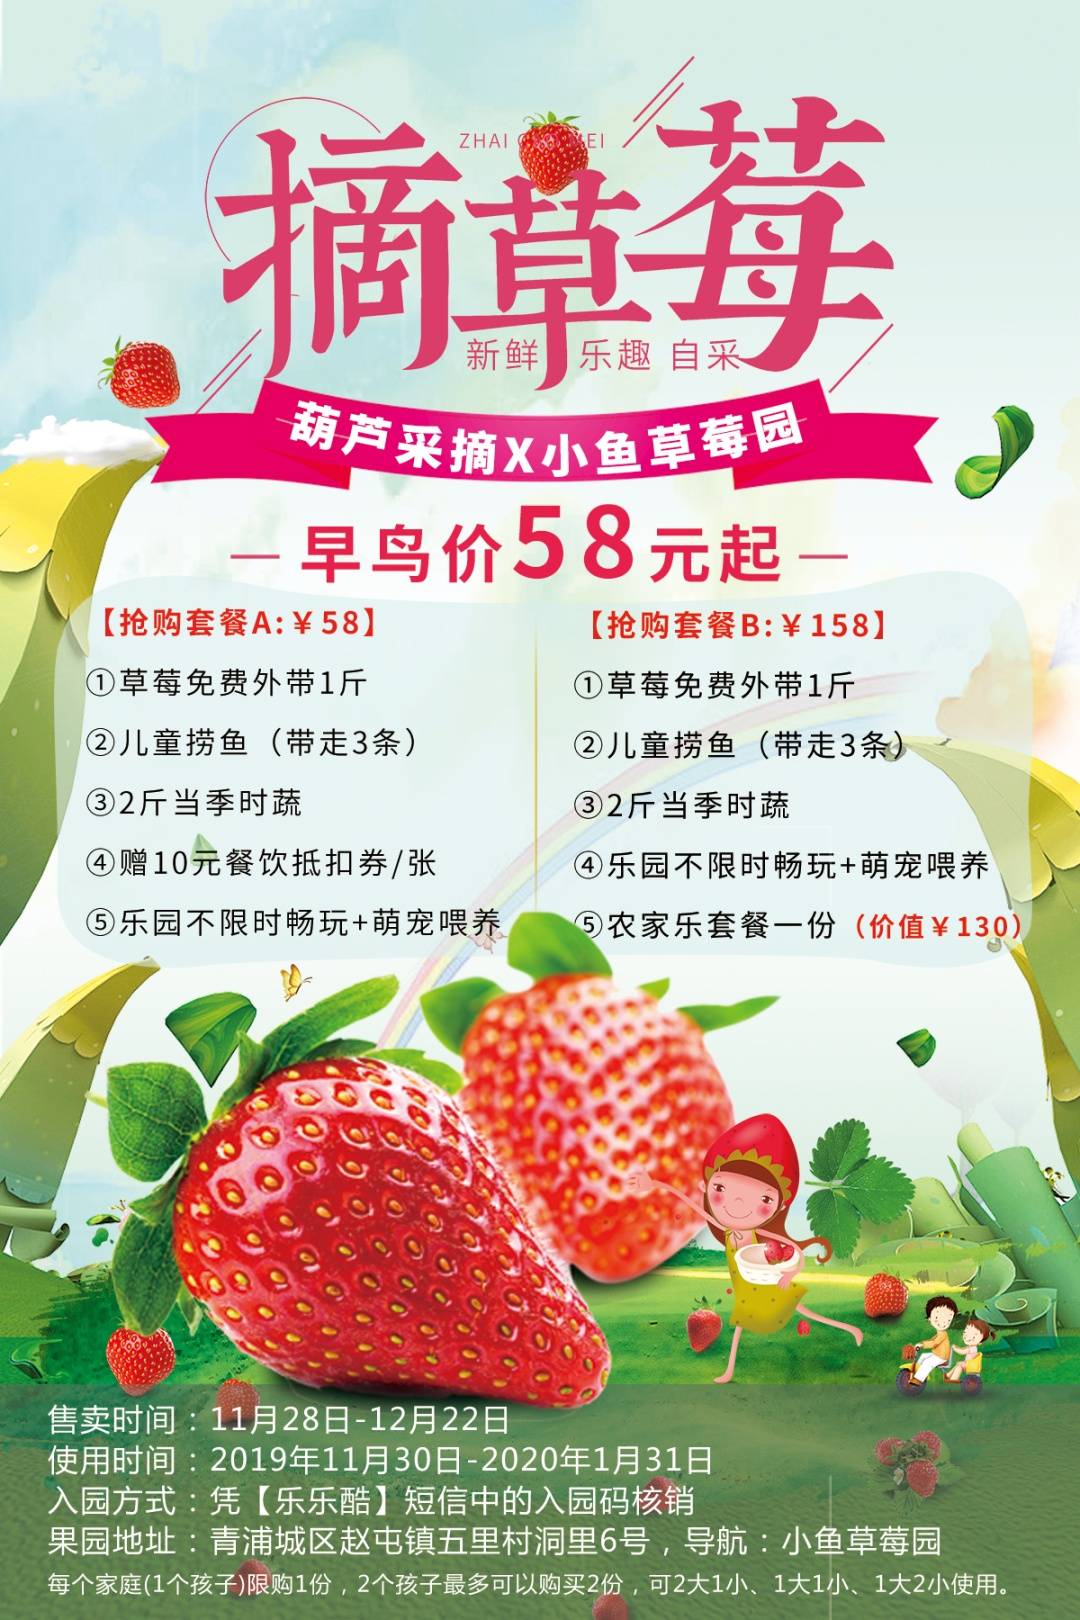 【上海】158元抢草莓采摘套餐！草莓1斤+儿童捞鱼+2斤当季时蔬+农家乐套餐一份！还能不限时畅玩乐园